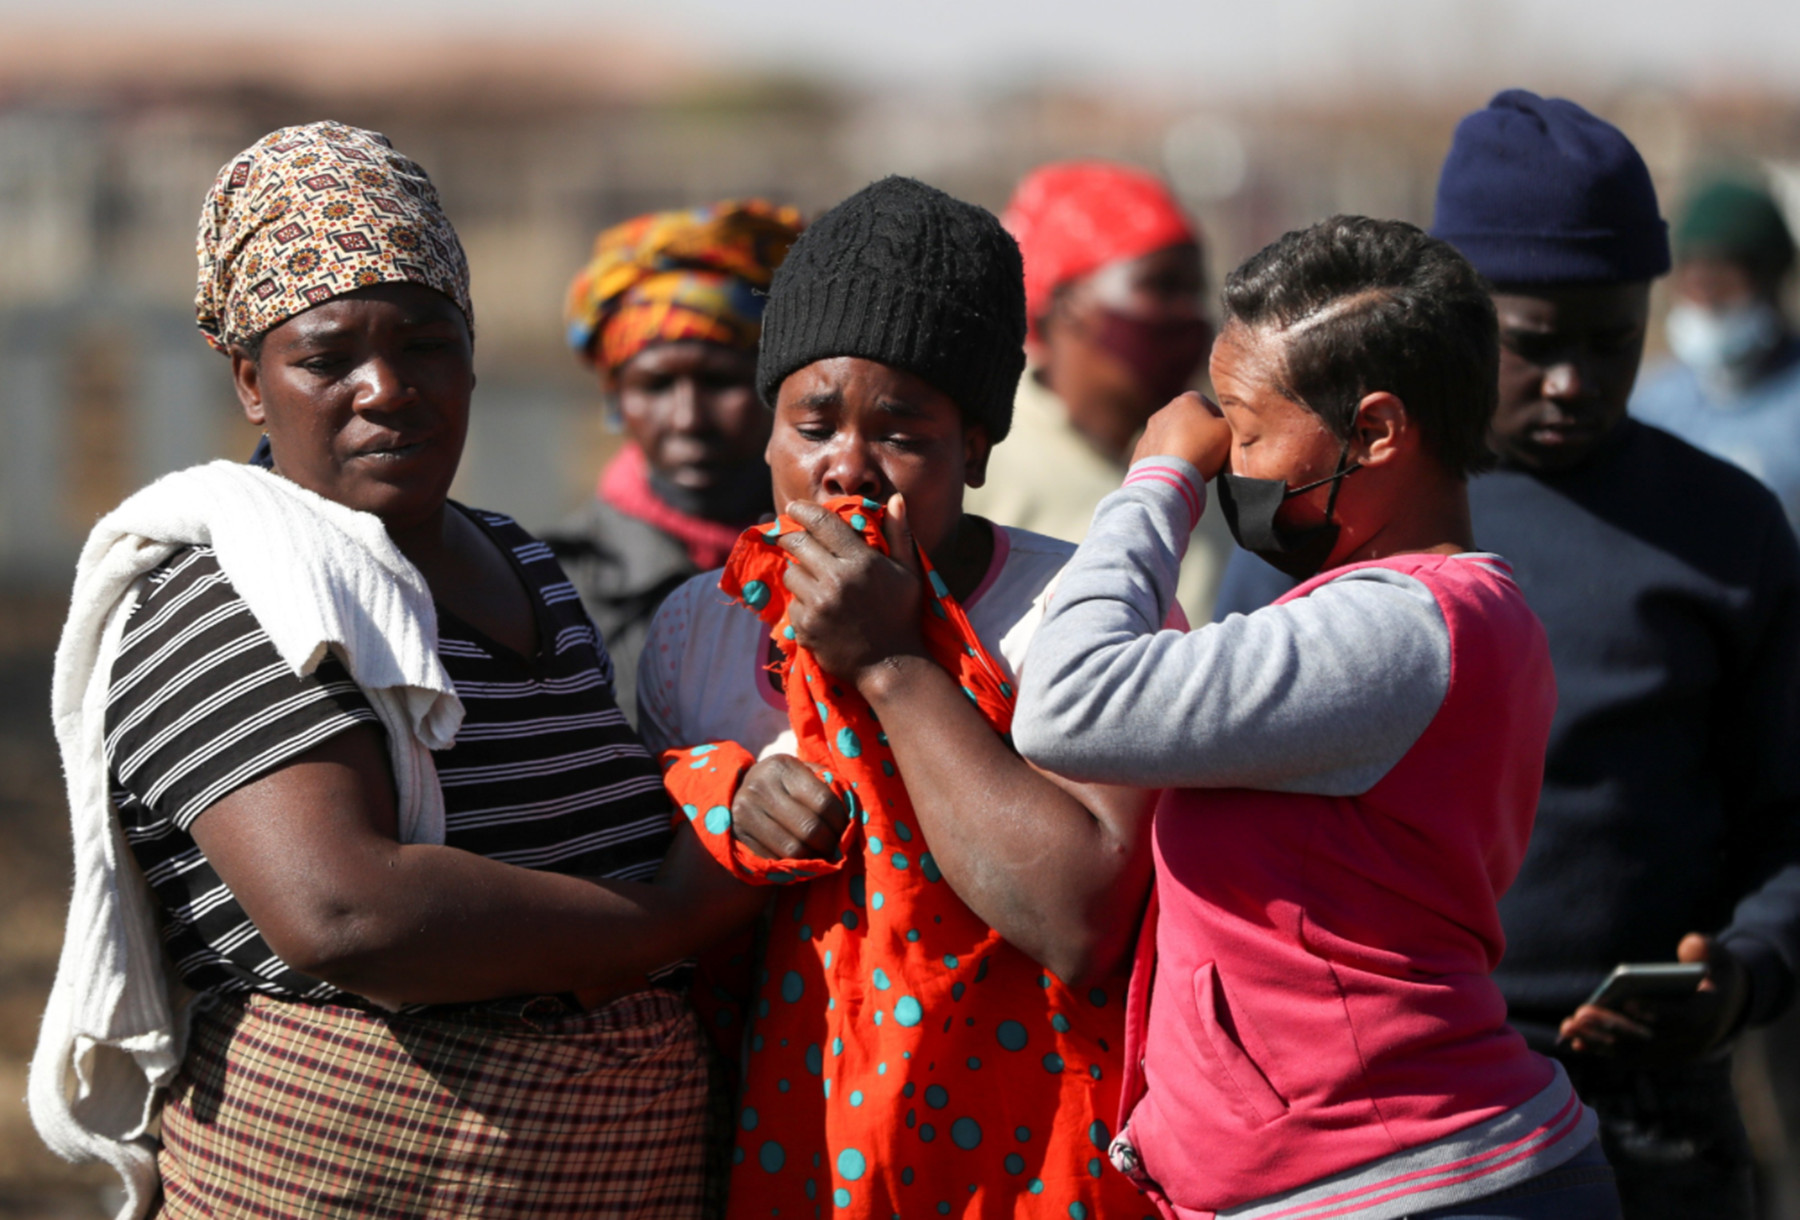 Νότια Αφρική ταραχές: Αυξάνεται δραματικά η λίστα των νεκρών